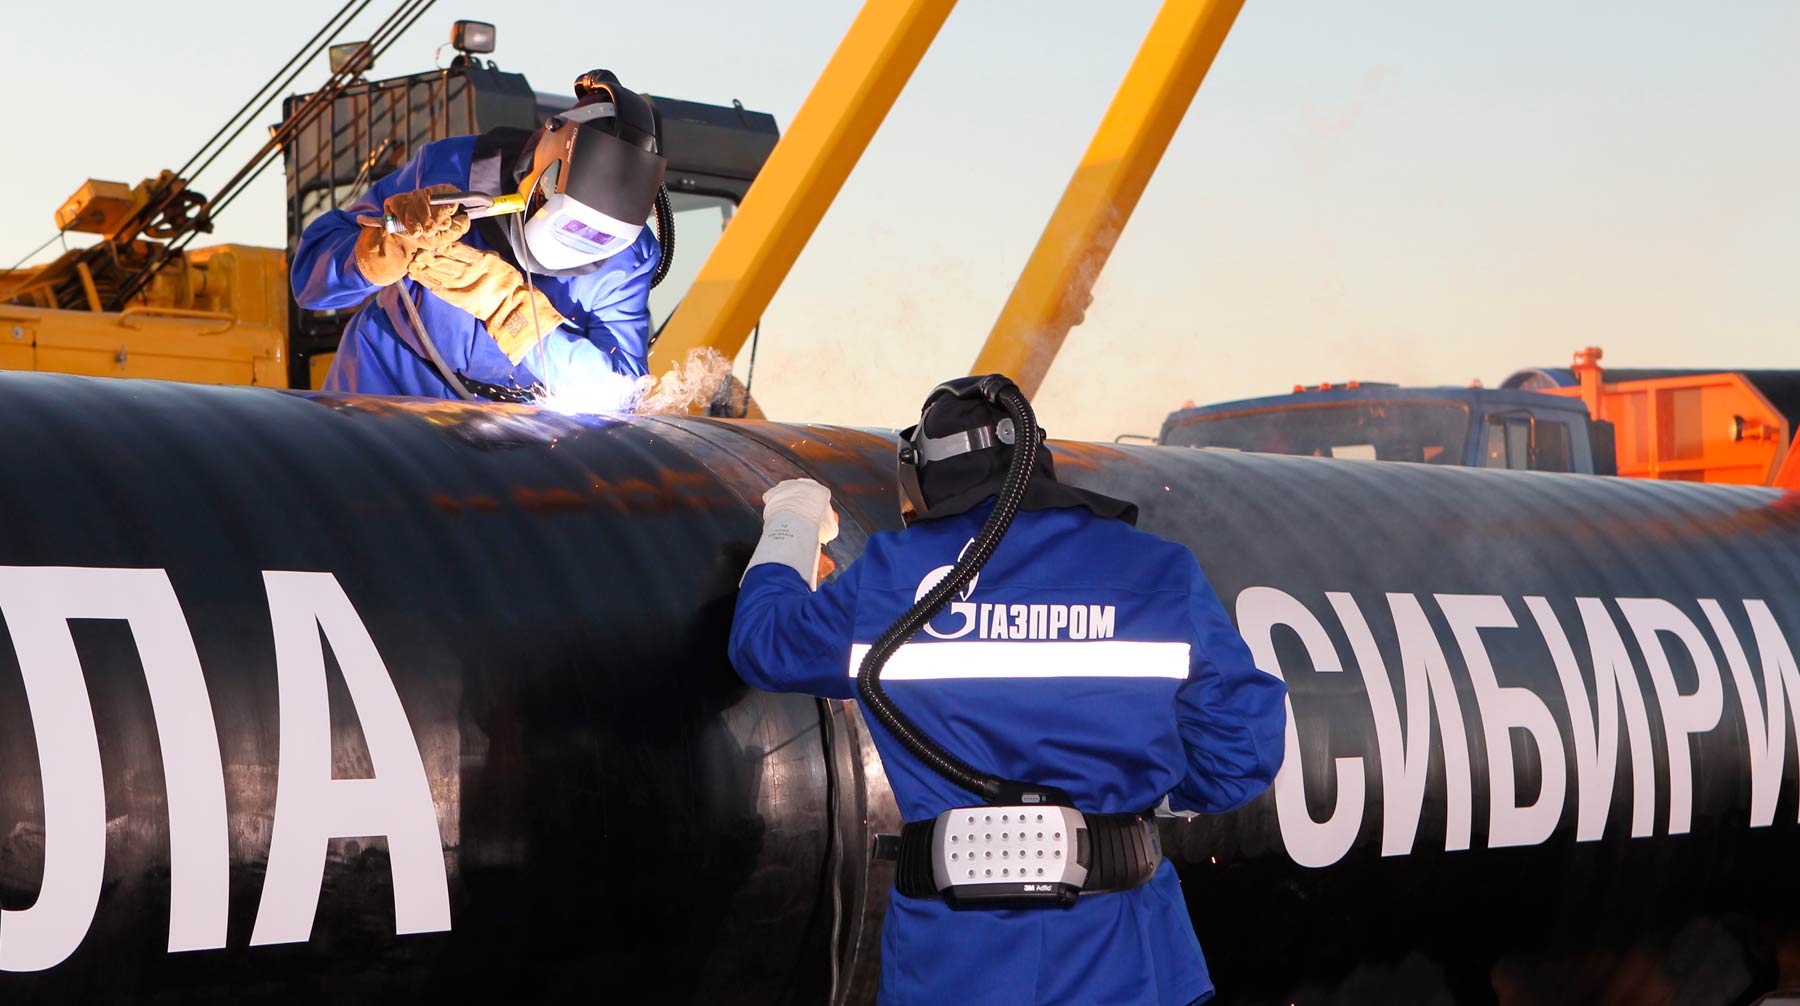 Ранее жалобами вахтовиков на нарушения трудового договора заинтересовались прокуратура и Следственный комитет Фото: © Газпром